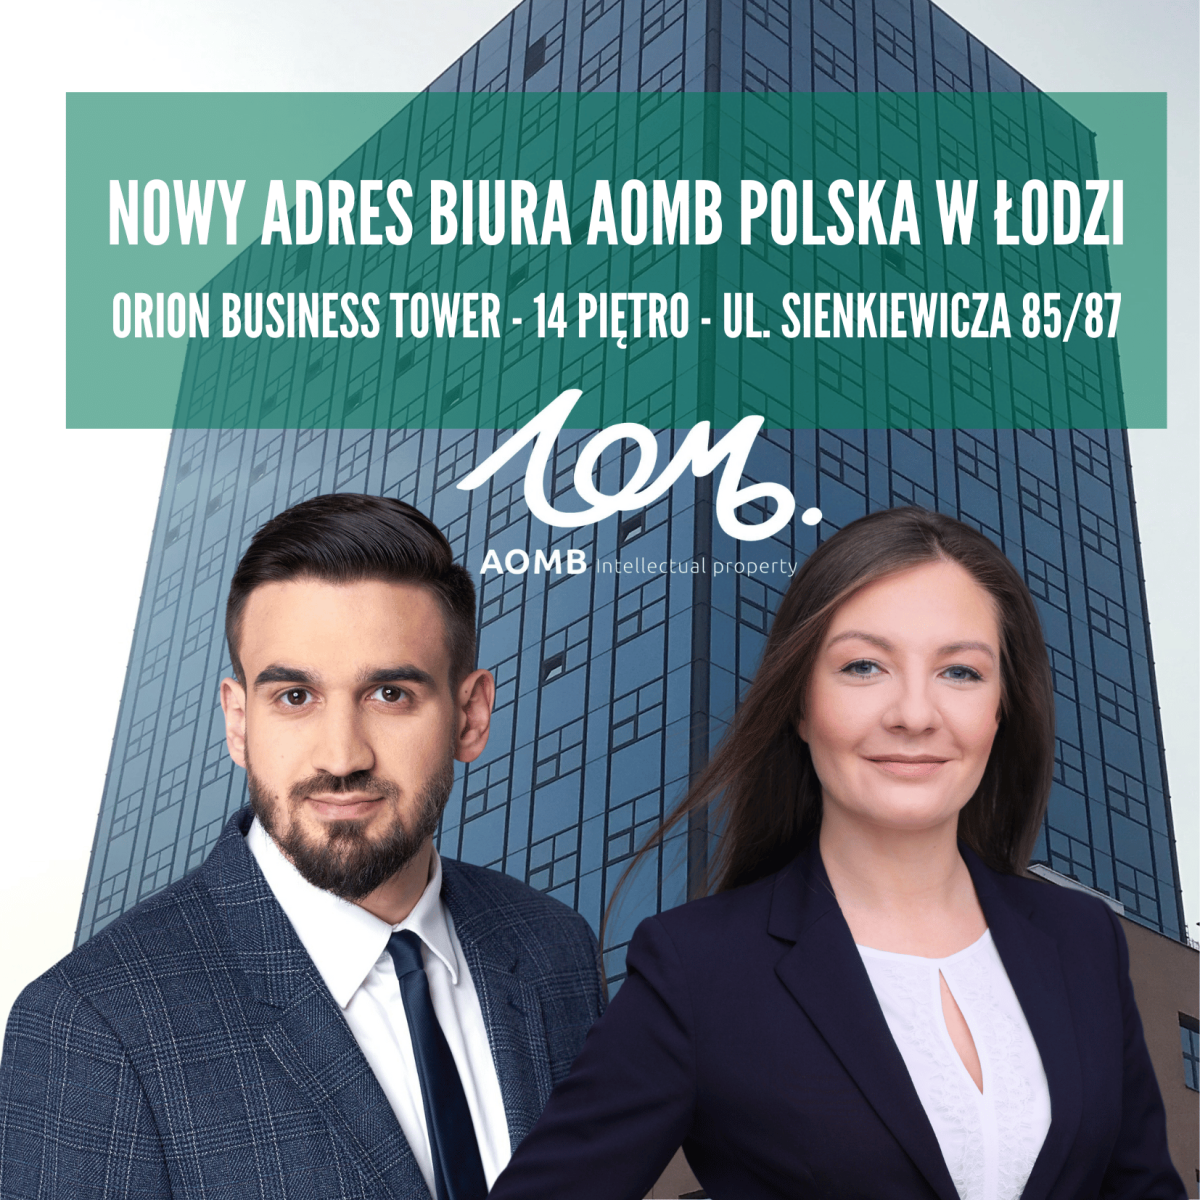 Nowy adres biura AOMB Polska w Łodzi!